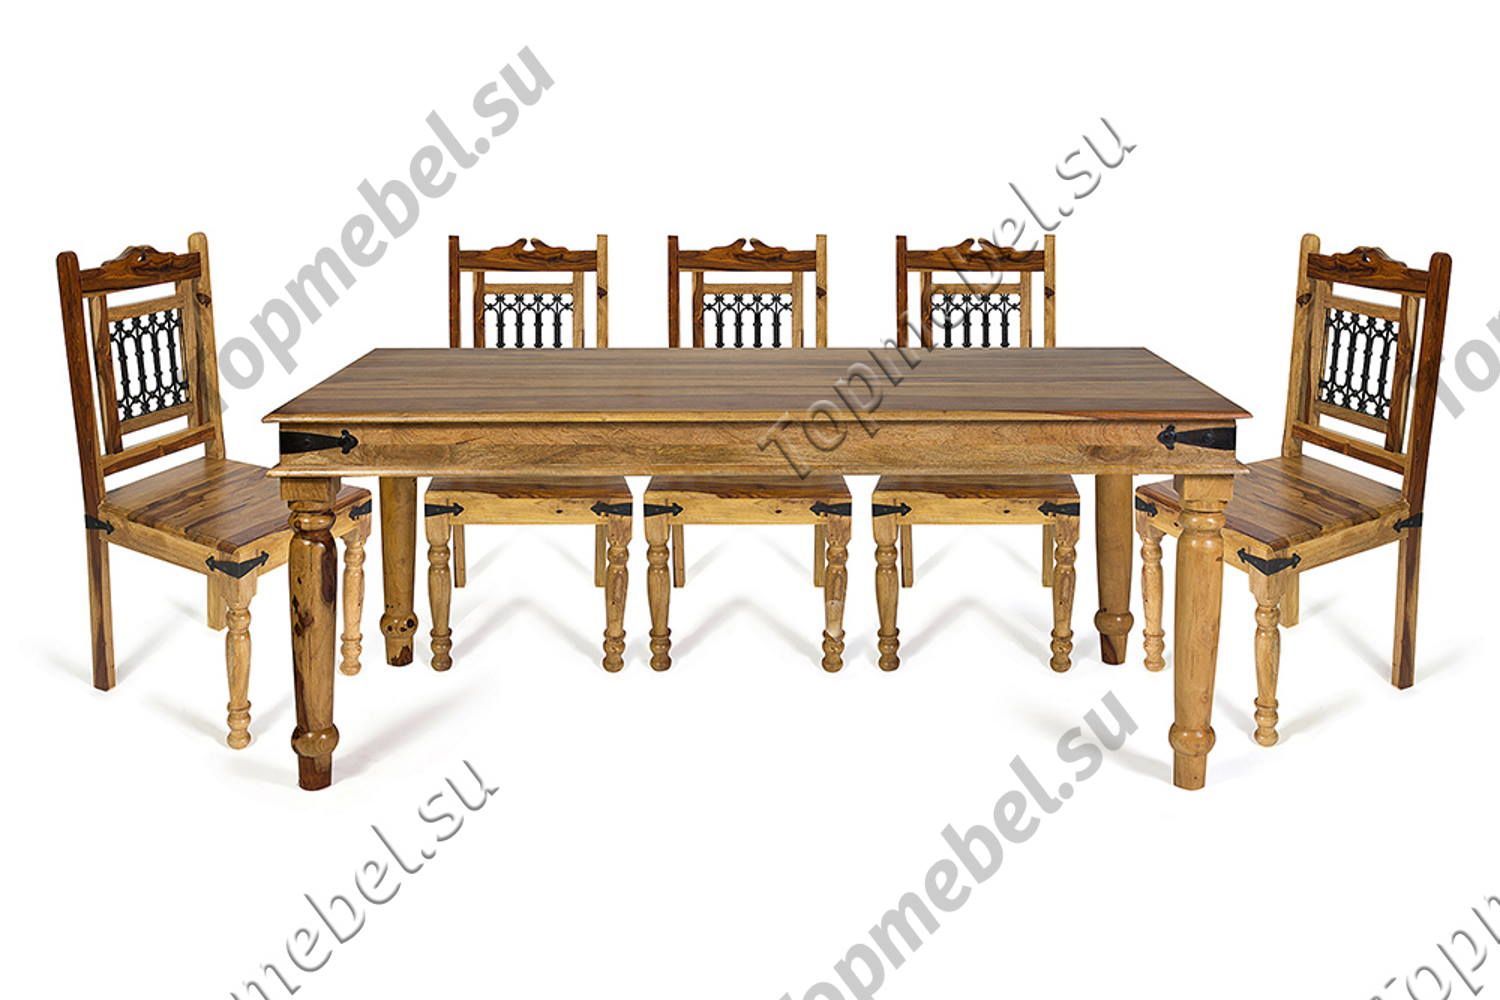 большие деревянные столы для столовой